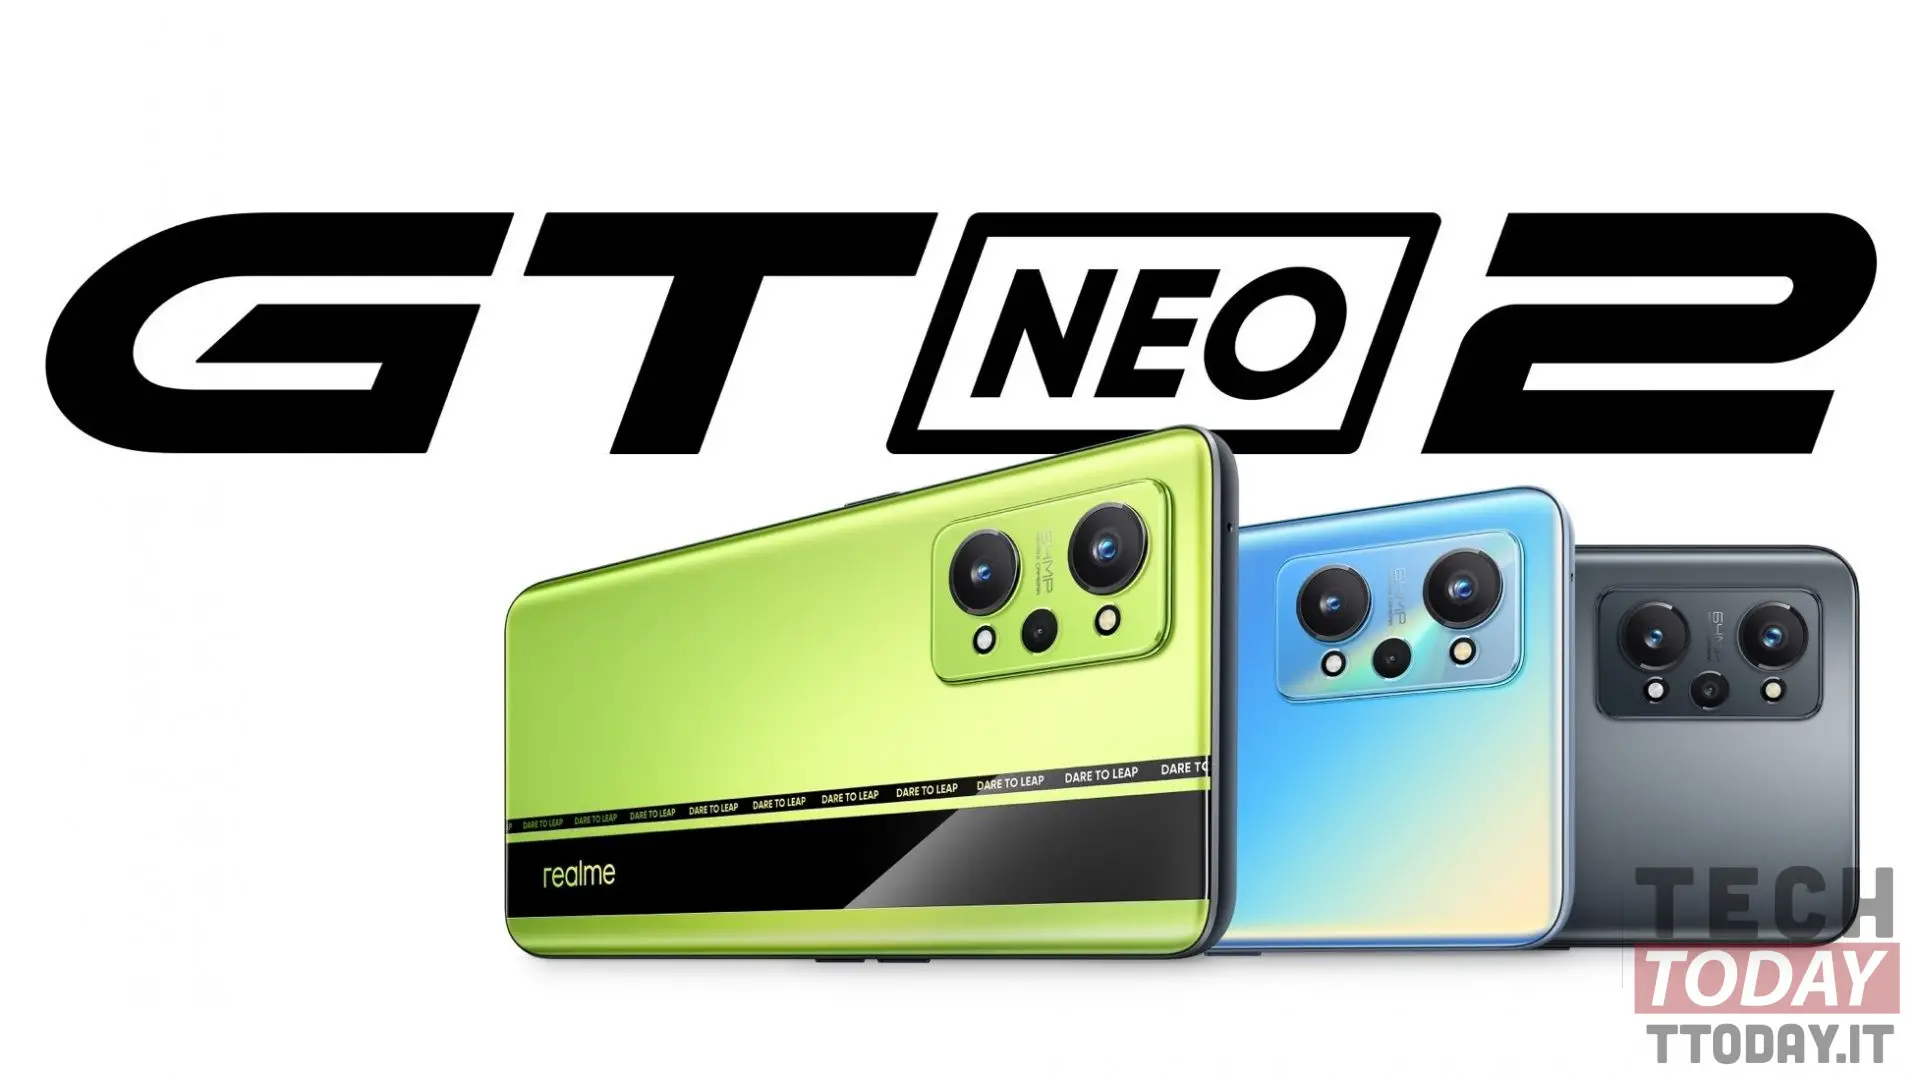 Vương quốc GT Neo2